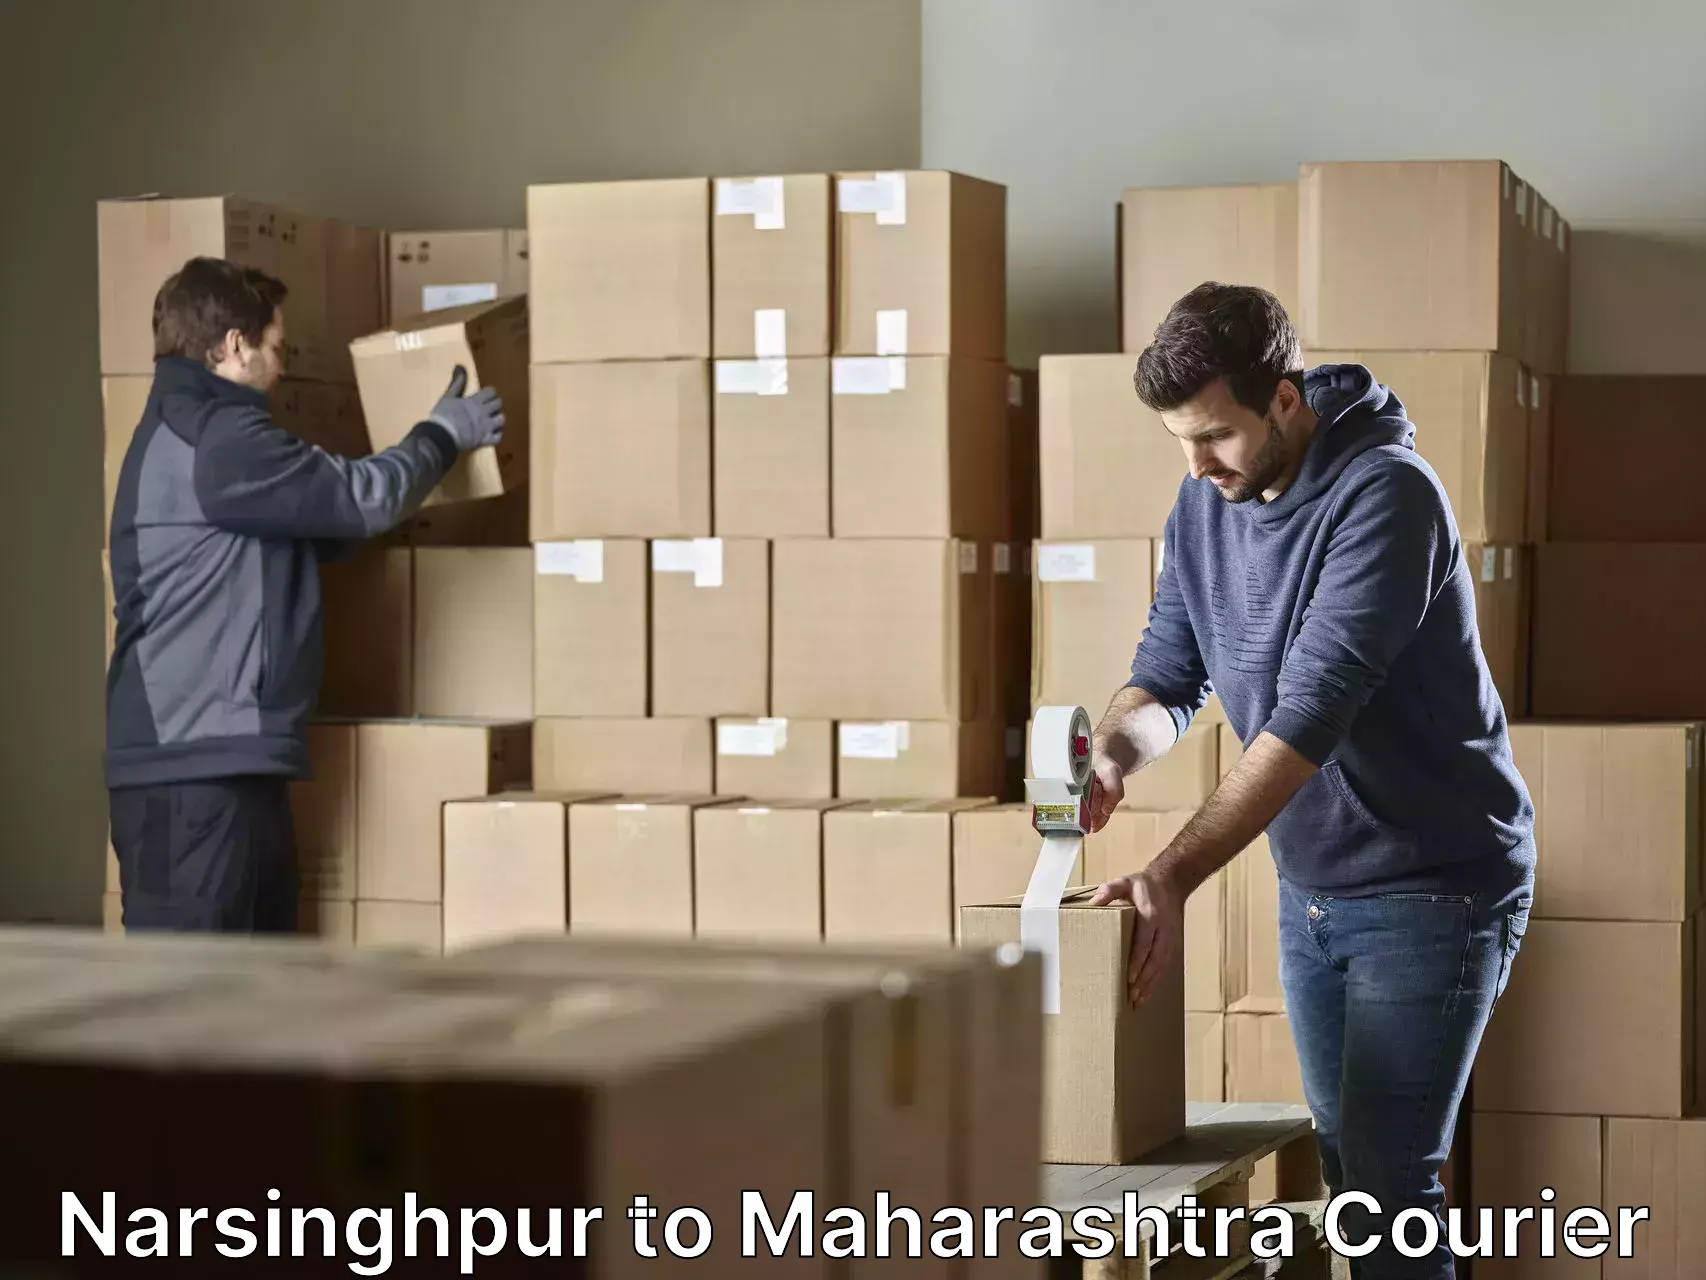 Professional moving assistance Narsinghpur to Maharashtra